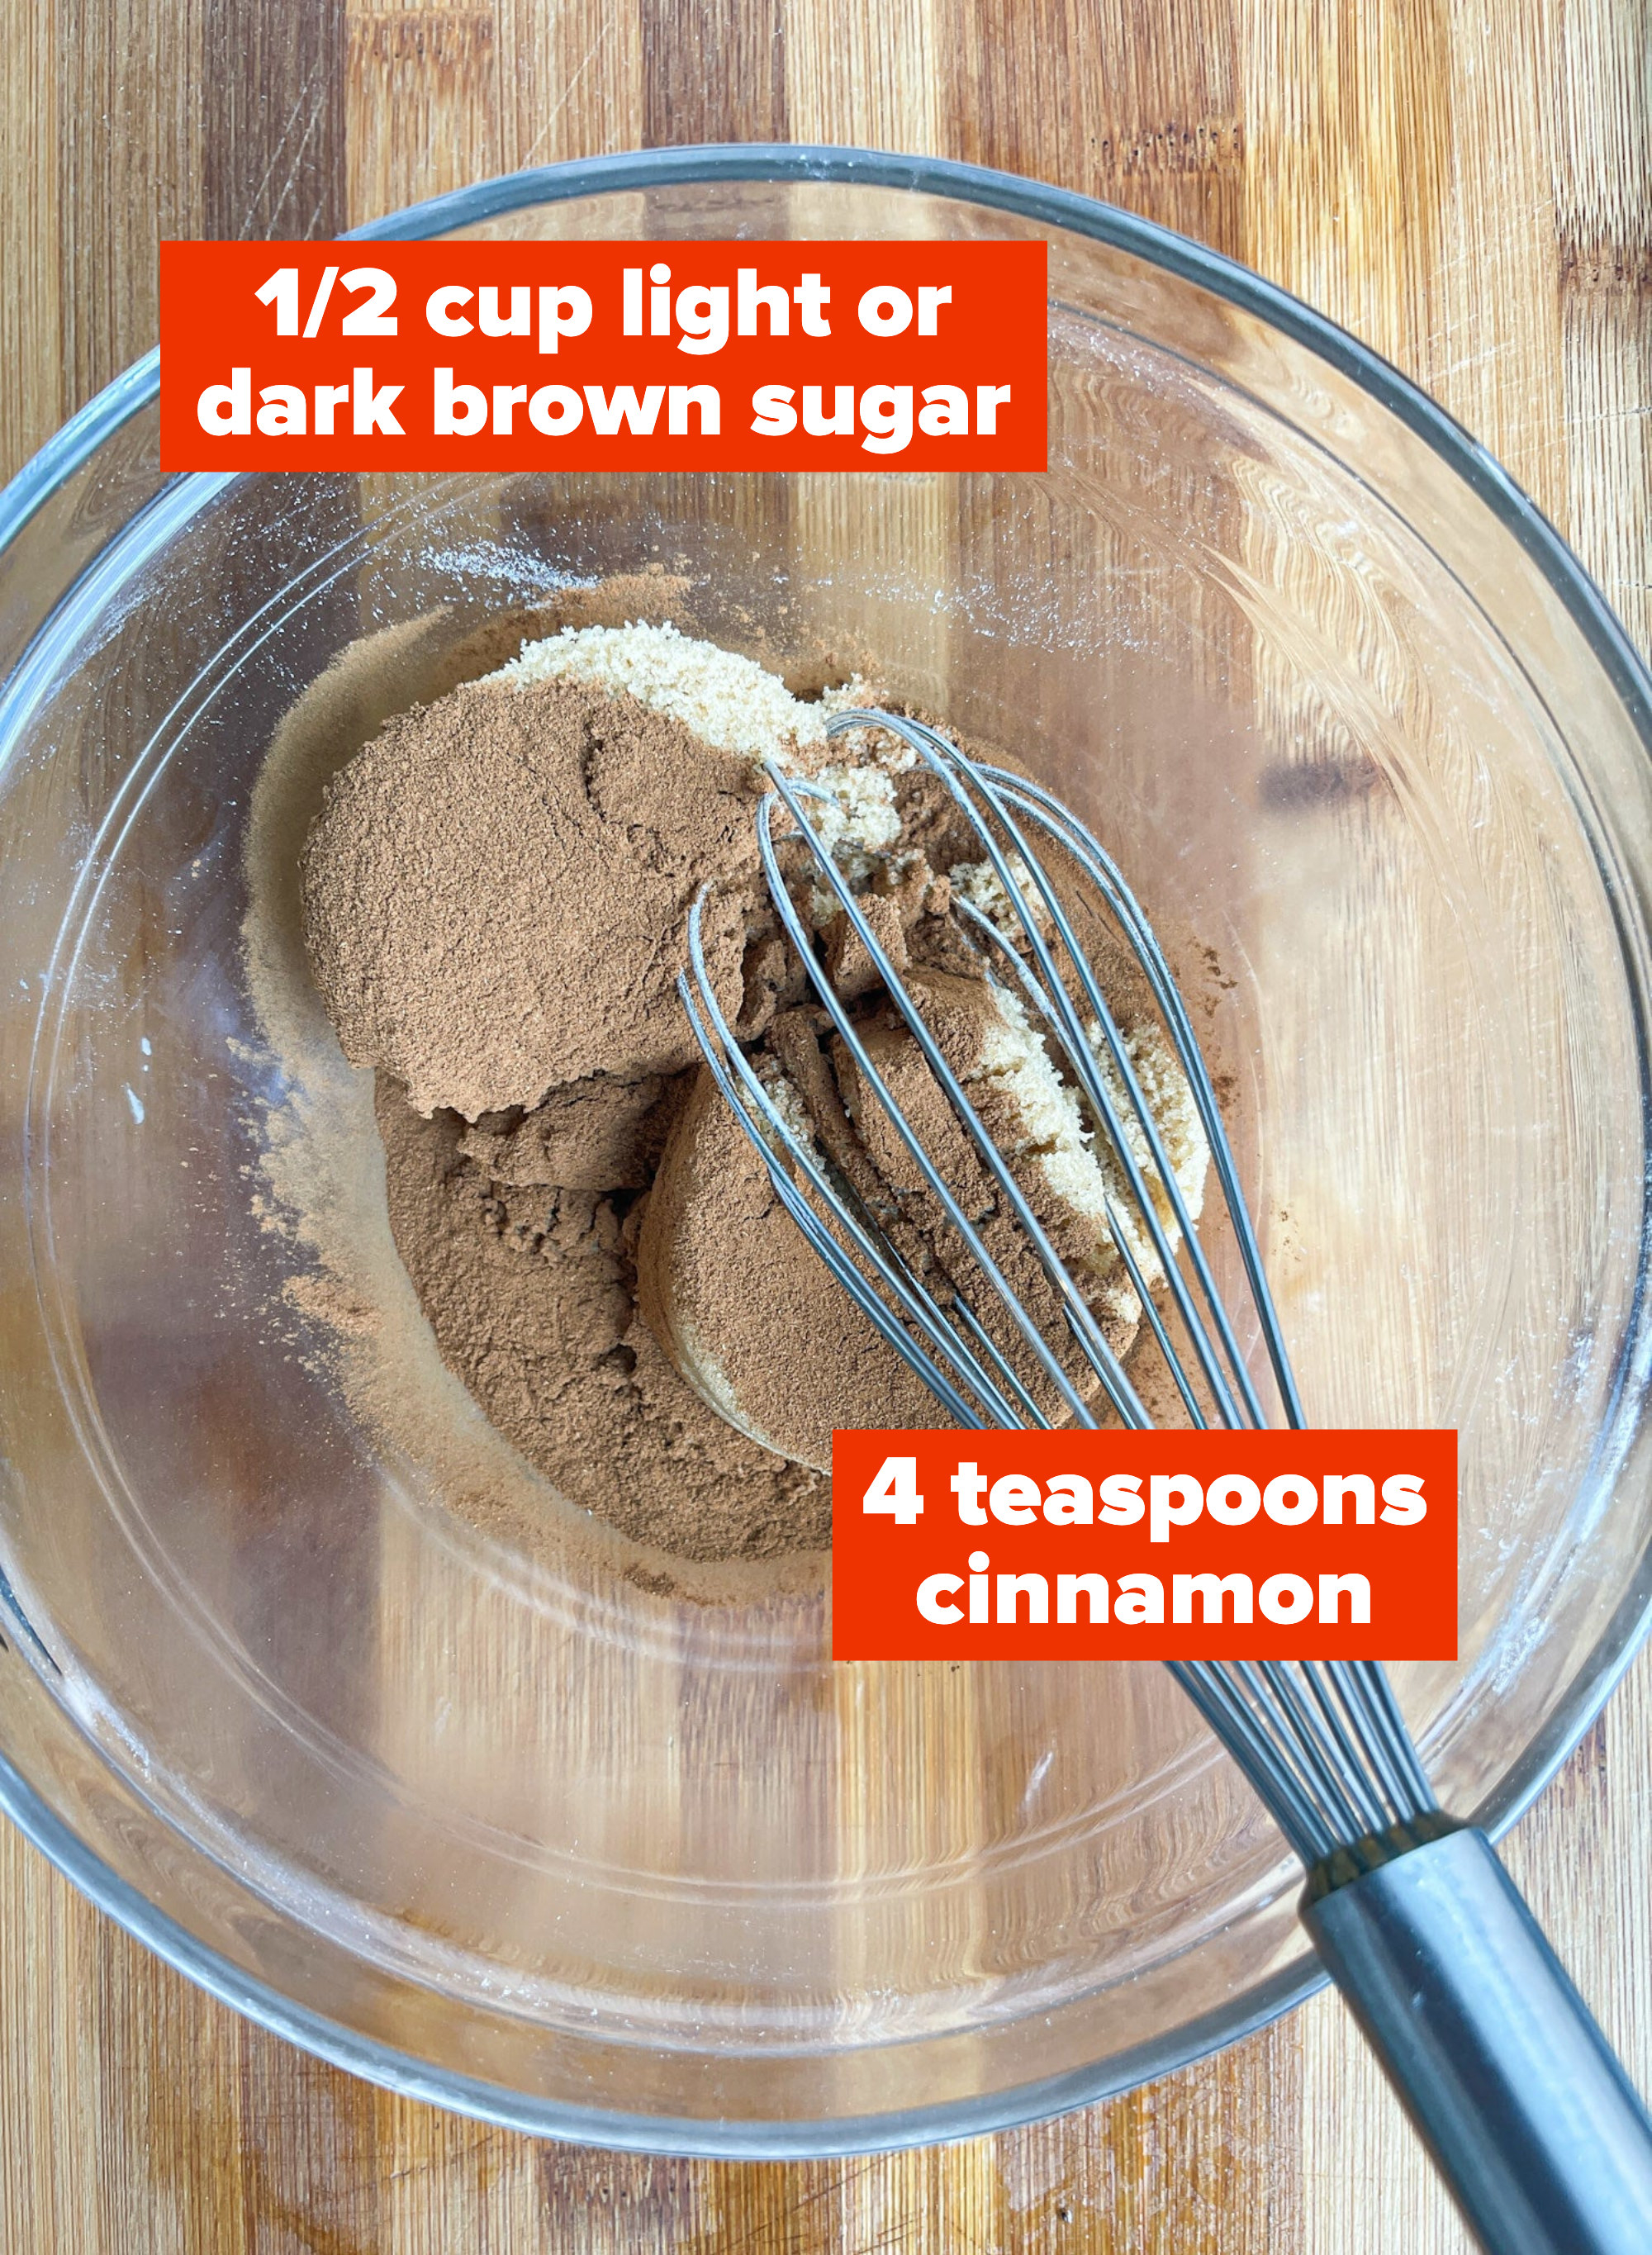 1/2 cup light or dark brown sugar and 4 teaspoons cinnamon